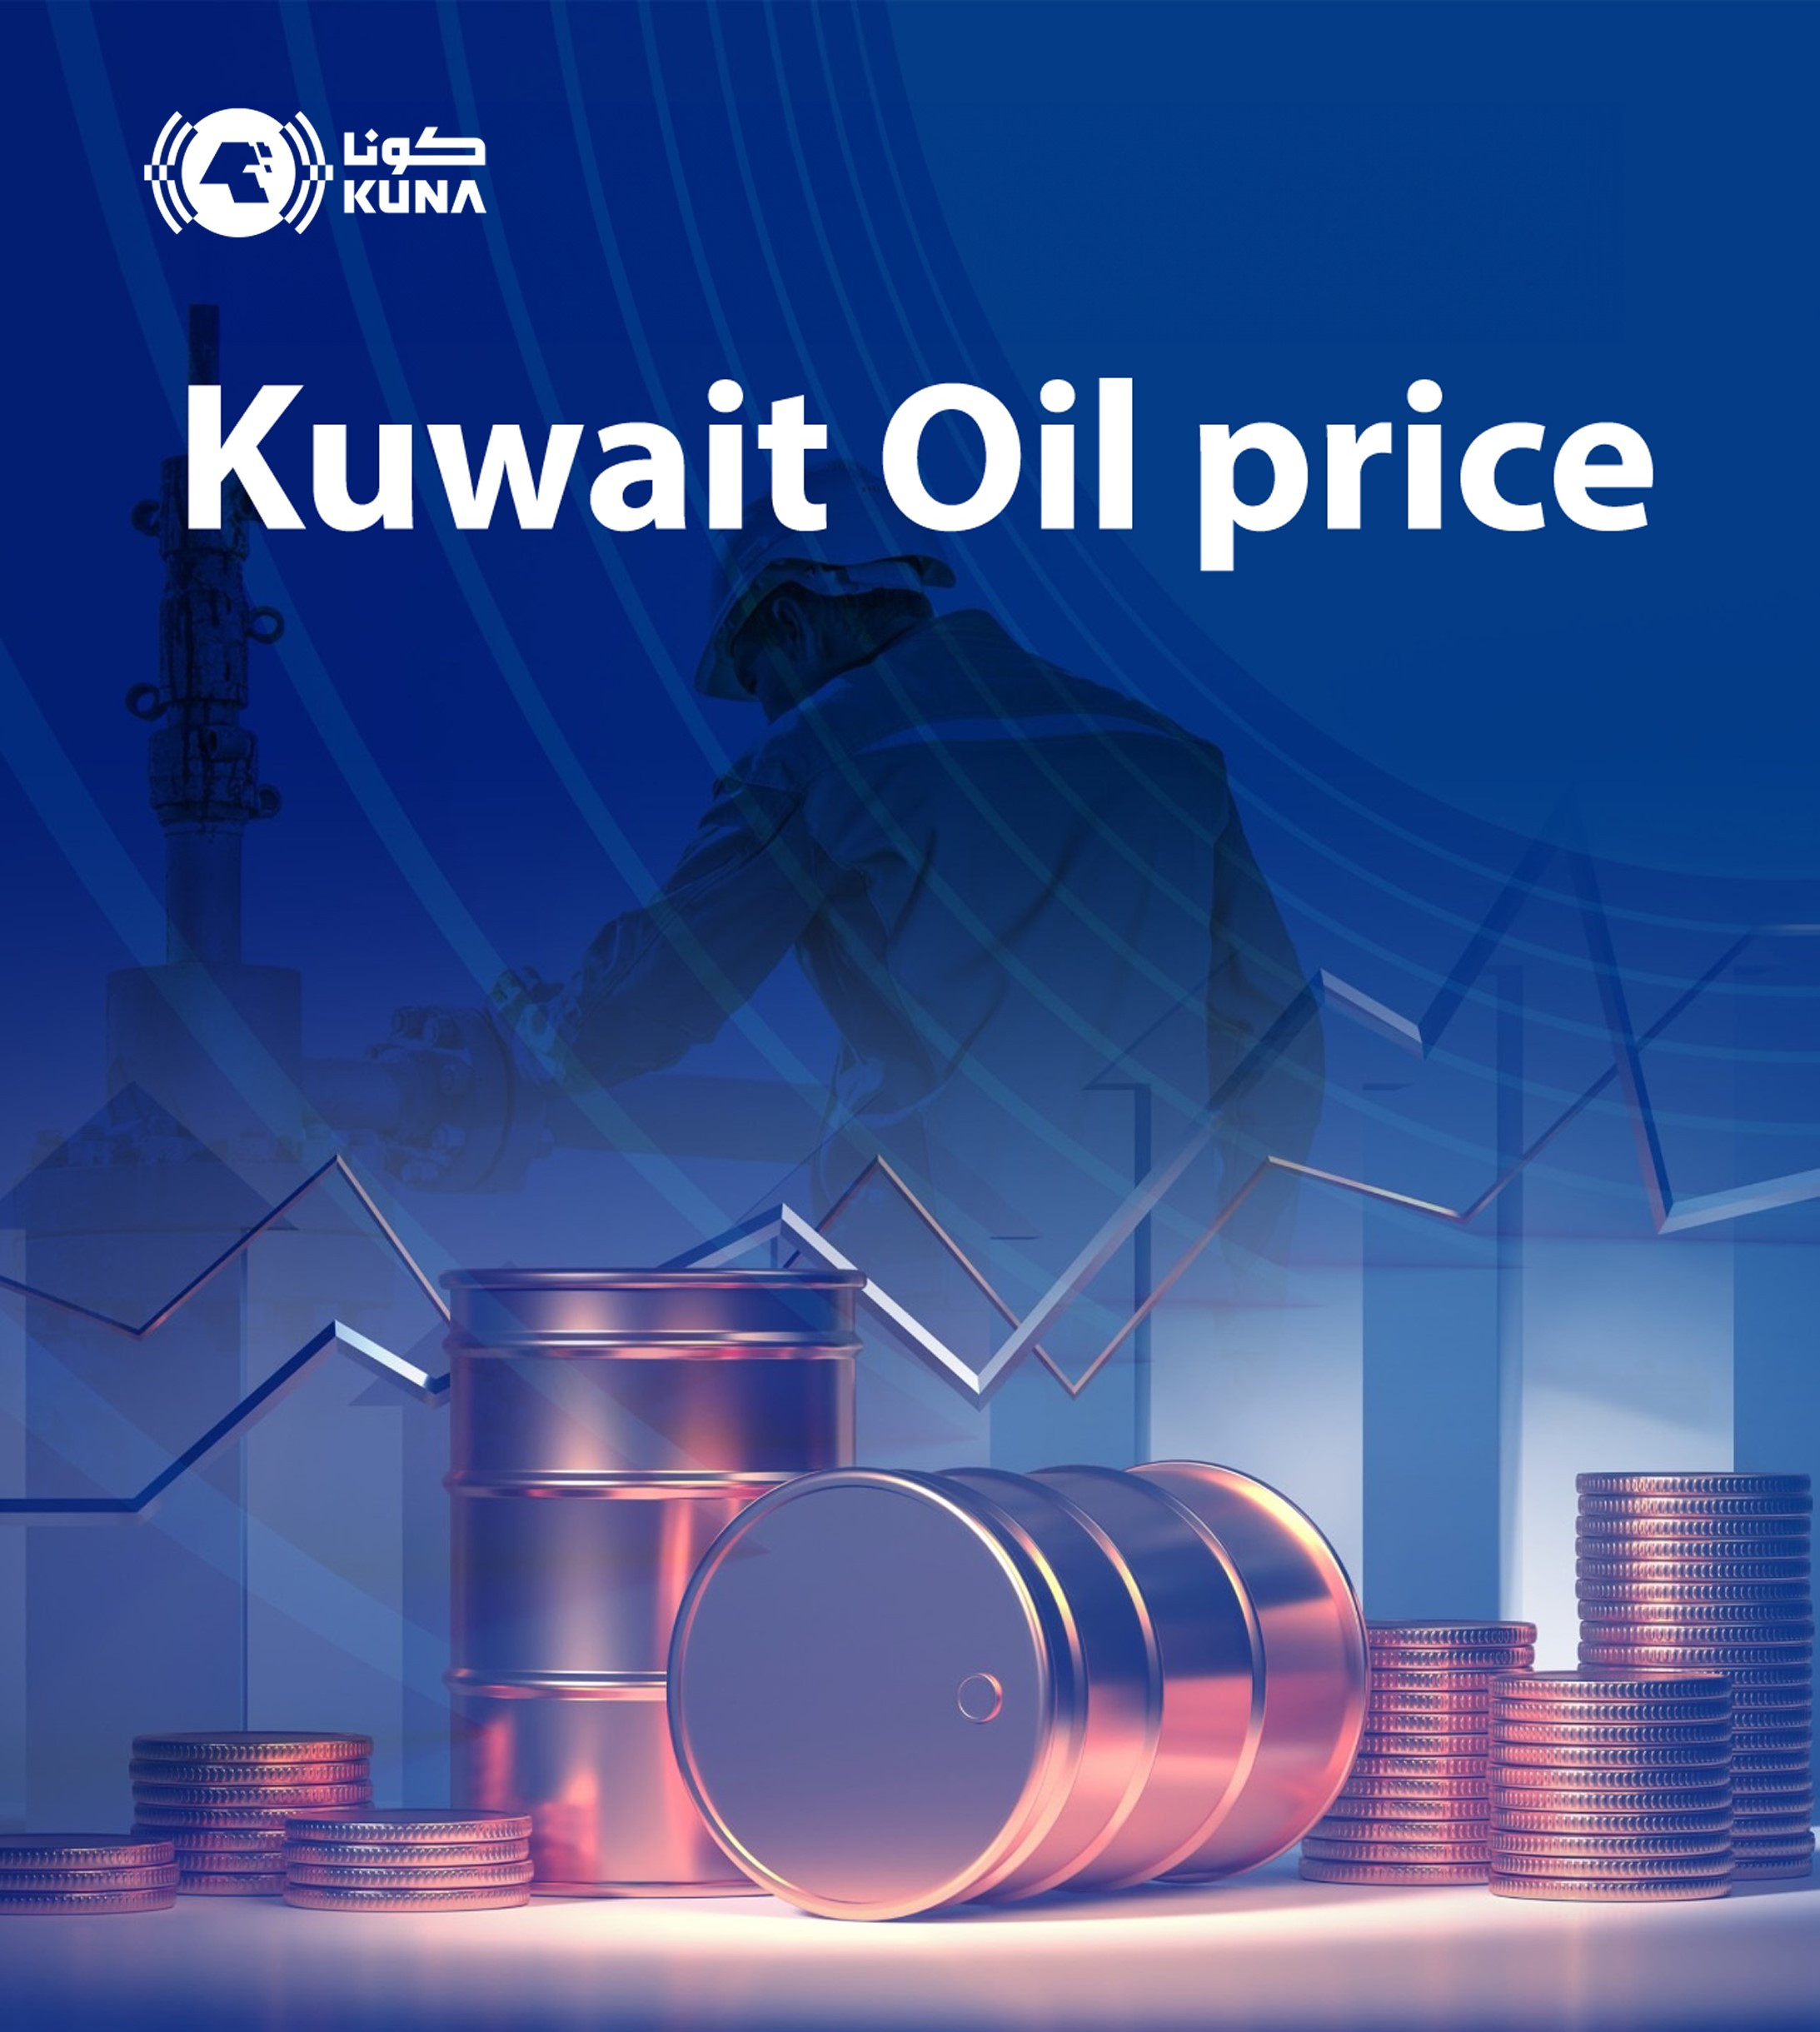 Kuwait oil price down to USD 90.63 pb - KPC                                                                                                                                                                                                               